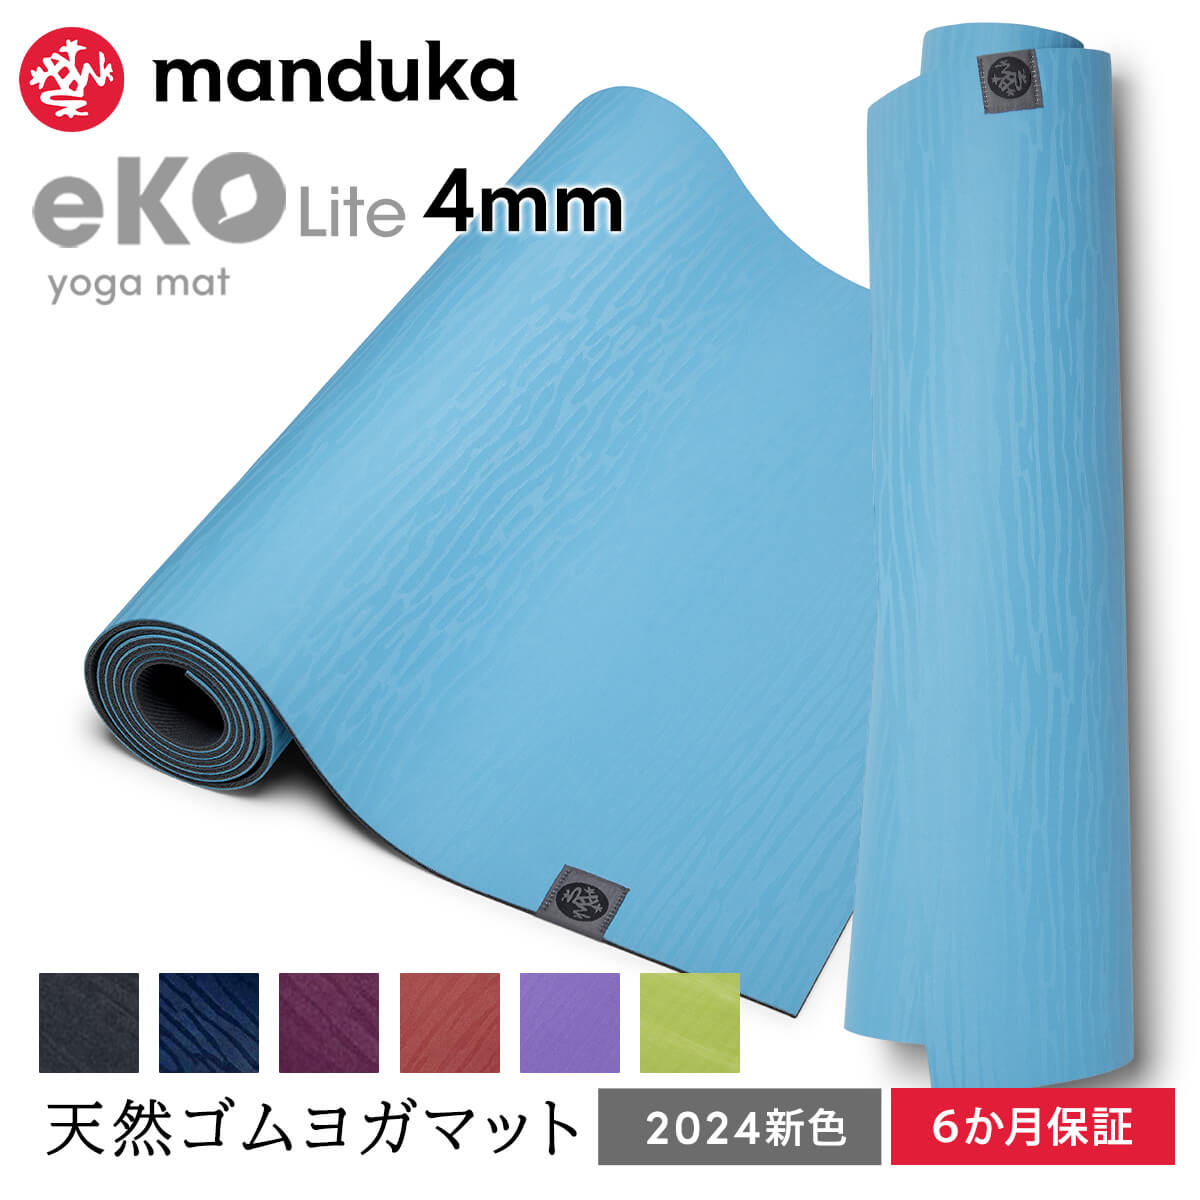 マンドゥカ Manduka ヨガマット エコライト 4mm 《6か月保証》日本正規品 eKO Lite yoga mat 天然ゴム 筋トレ トレーニング ピラティス 柄 24SS「MR」 ST-MA 001 RVPA